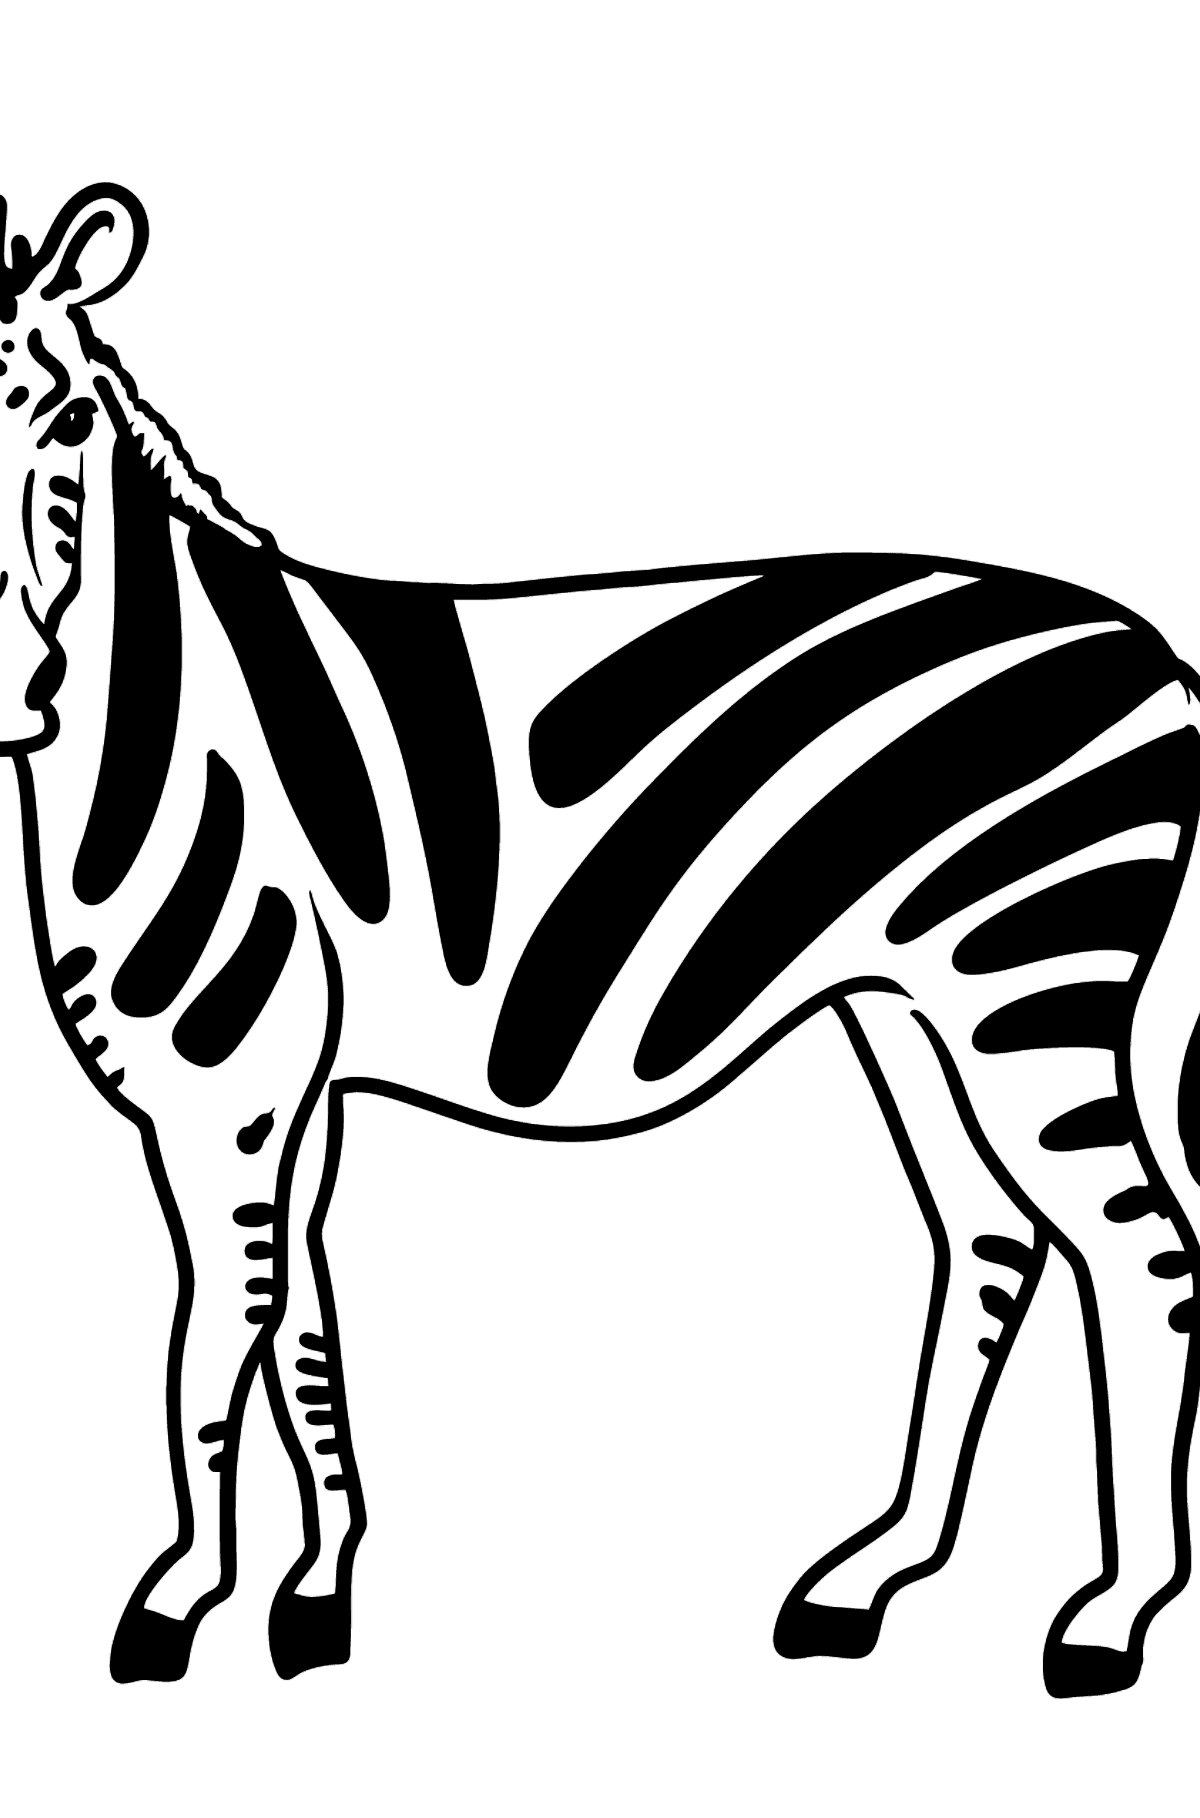 Zebra para colorir - Imagens para Colorir para Crianças